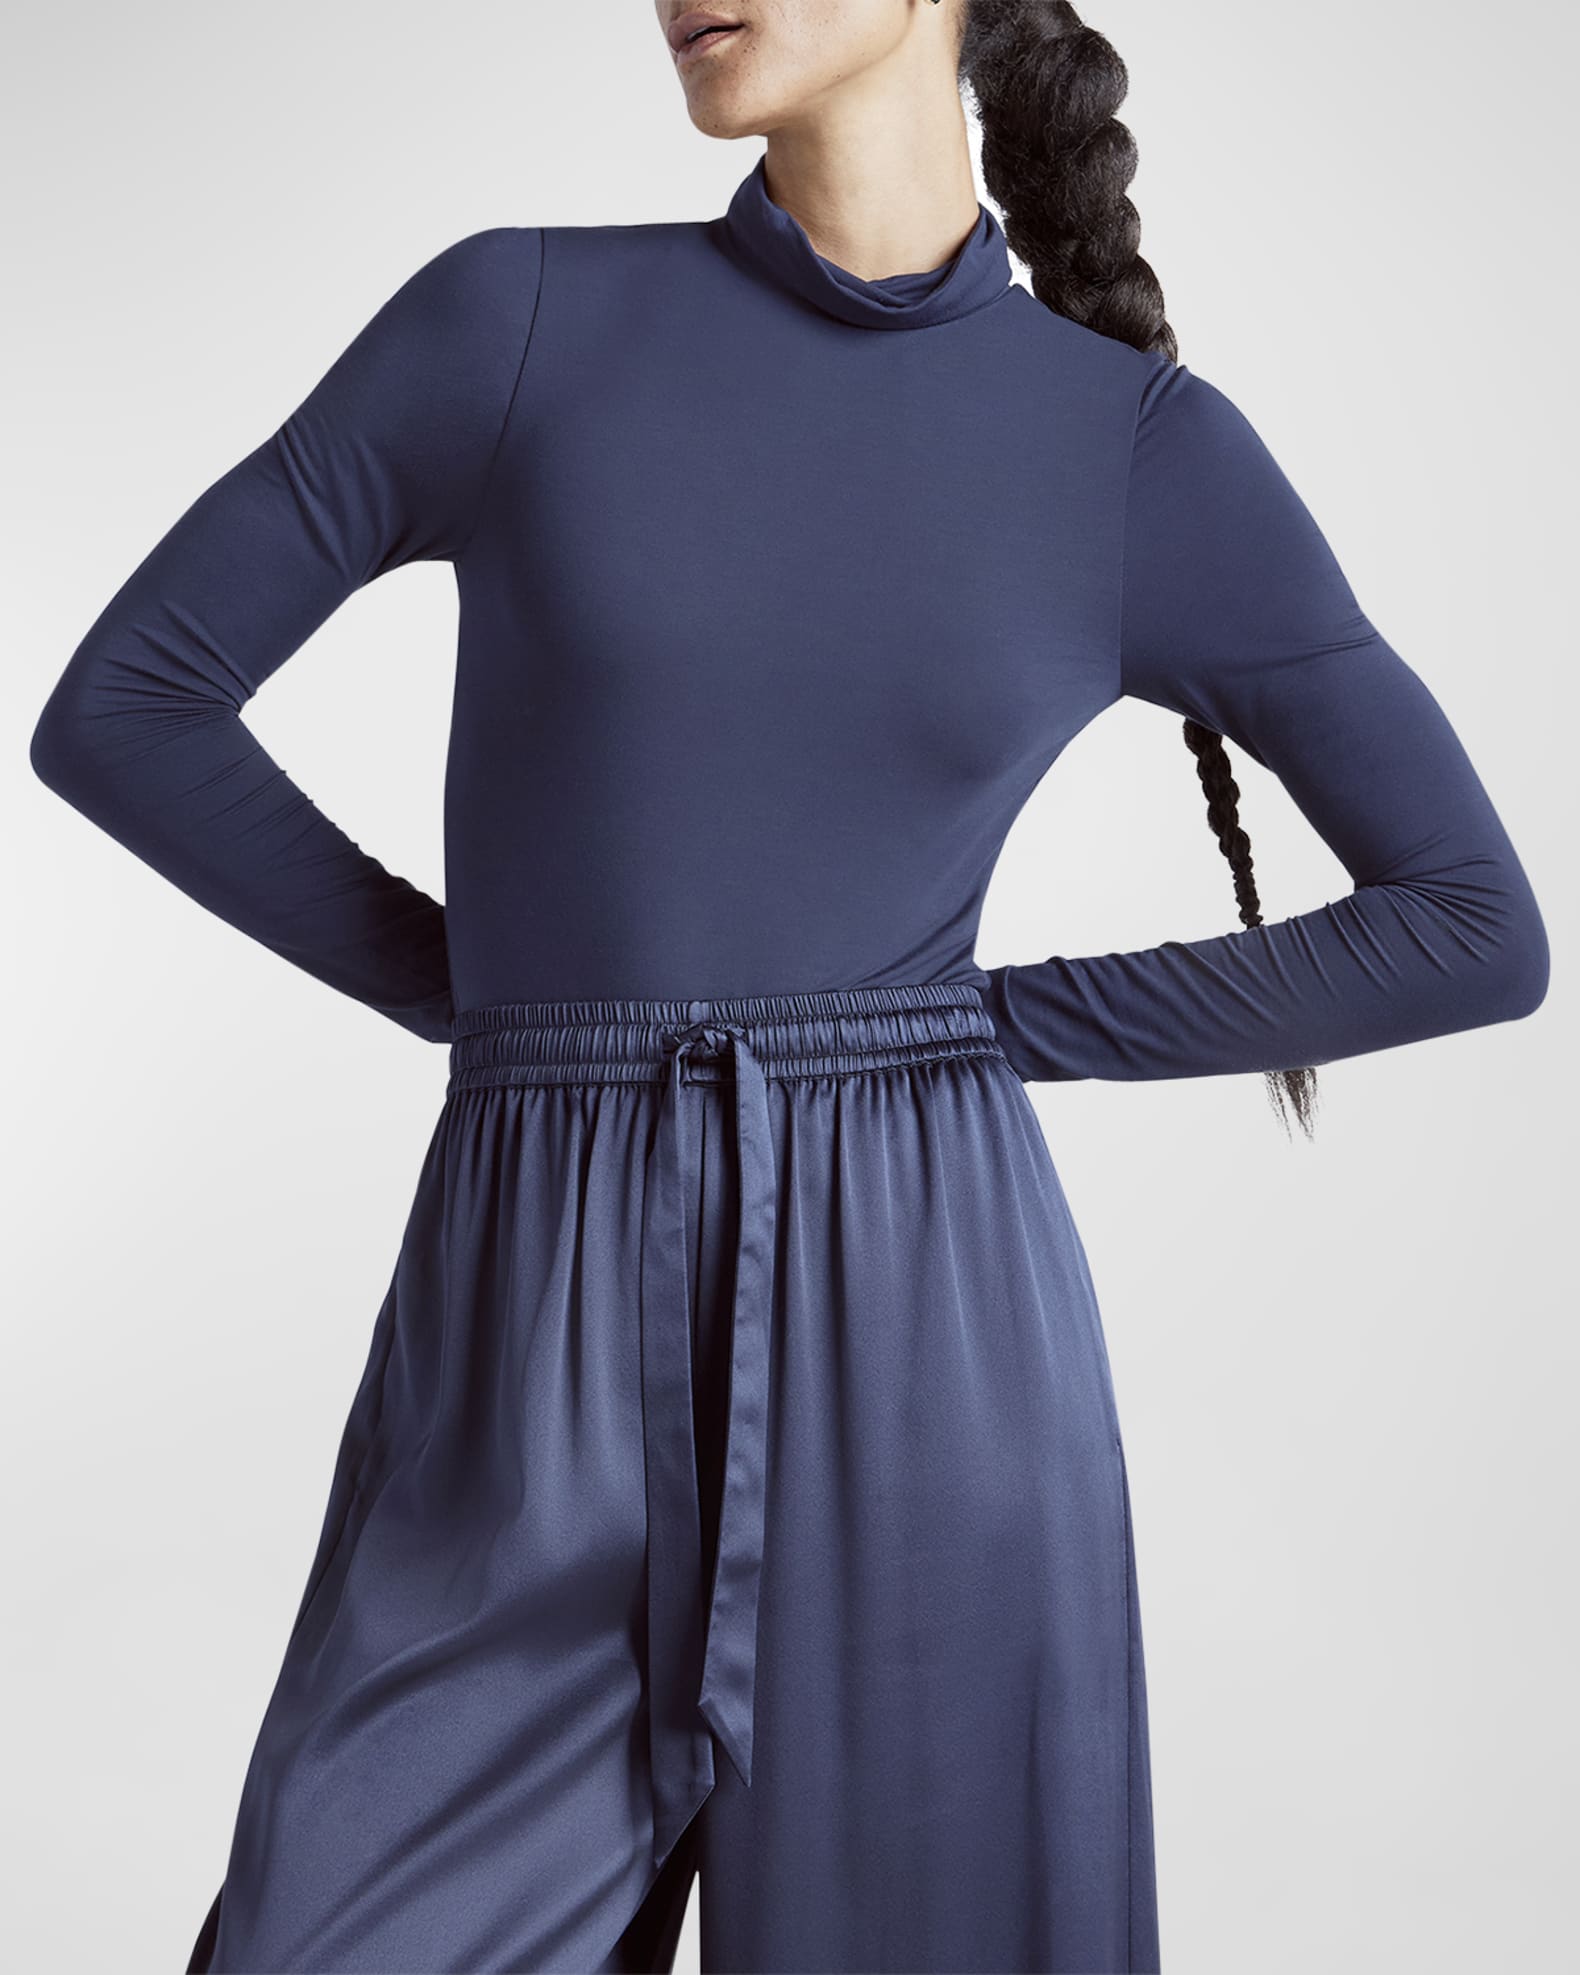 Kate Young x Splendid Silk-Modal Turtleneck Bodysuit